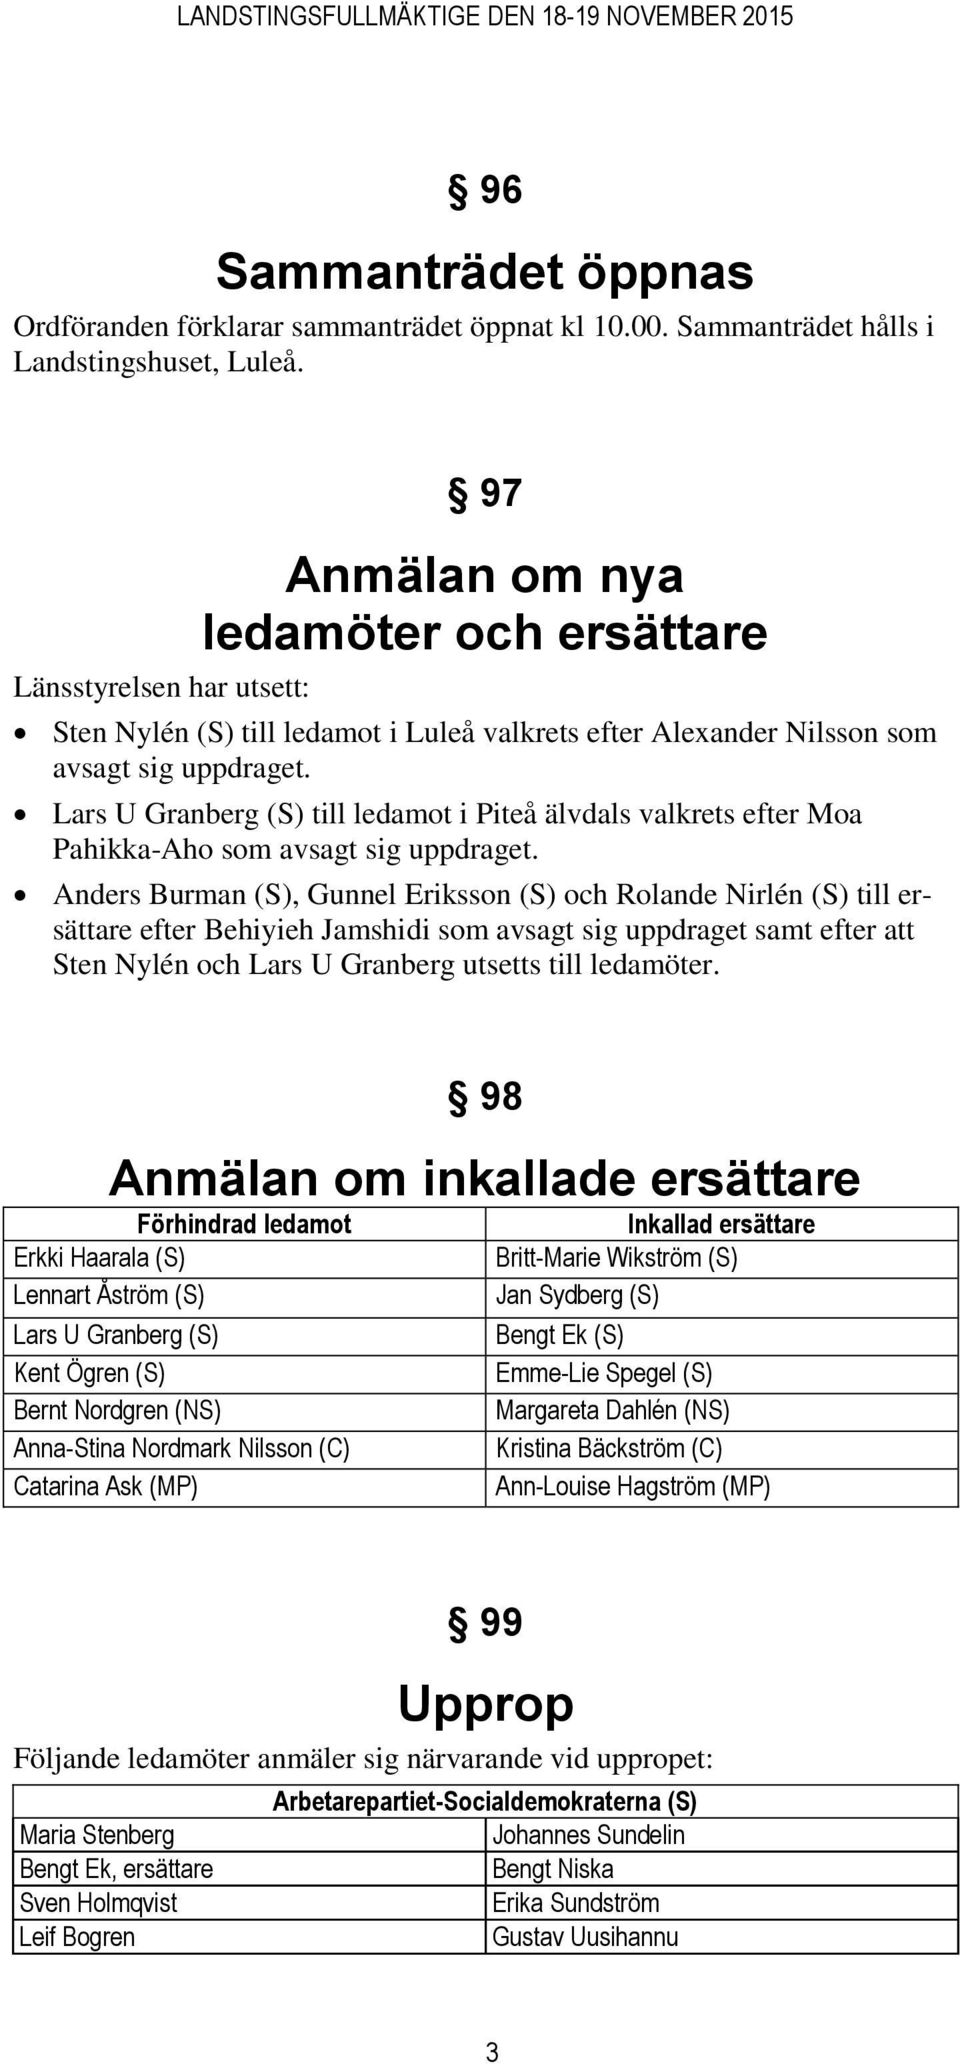 Lars U Granberg (S) till ledamot i Piteå älvdals valkrets efter Moa Pahikka-Aho som avsagt sig uppdraget.